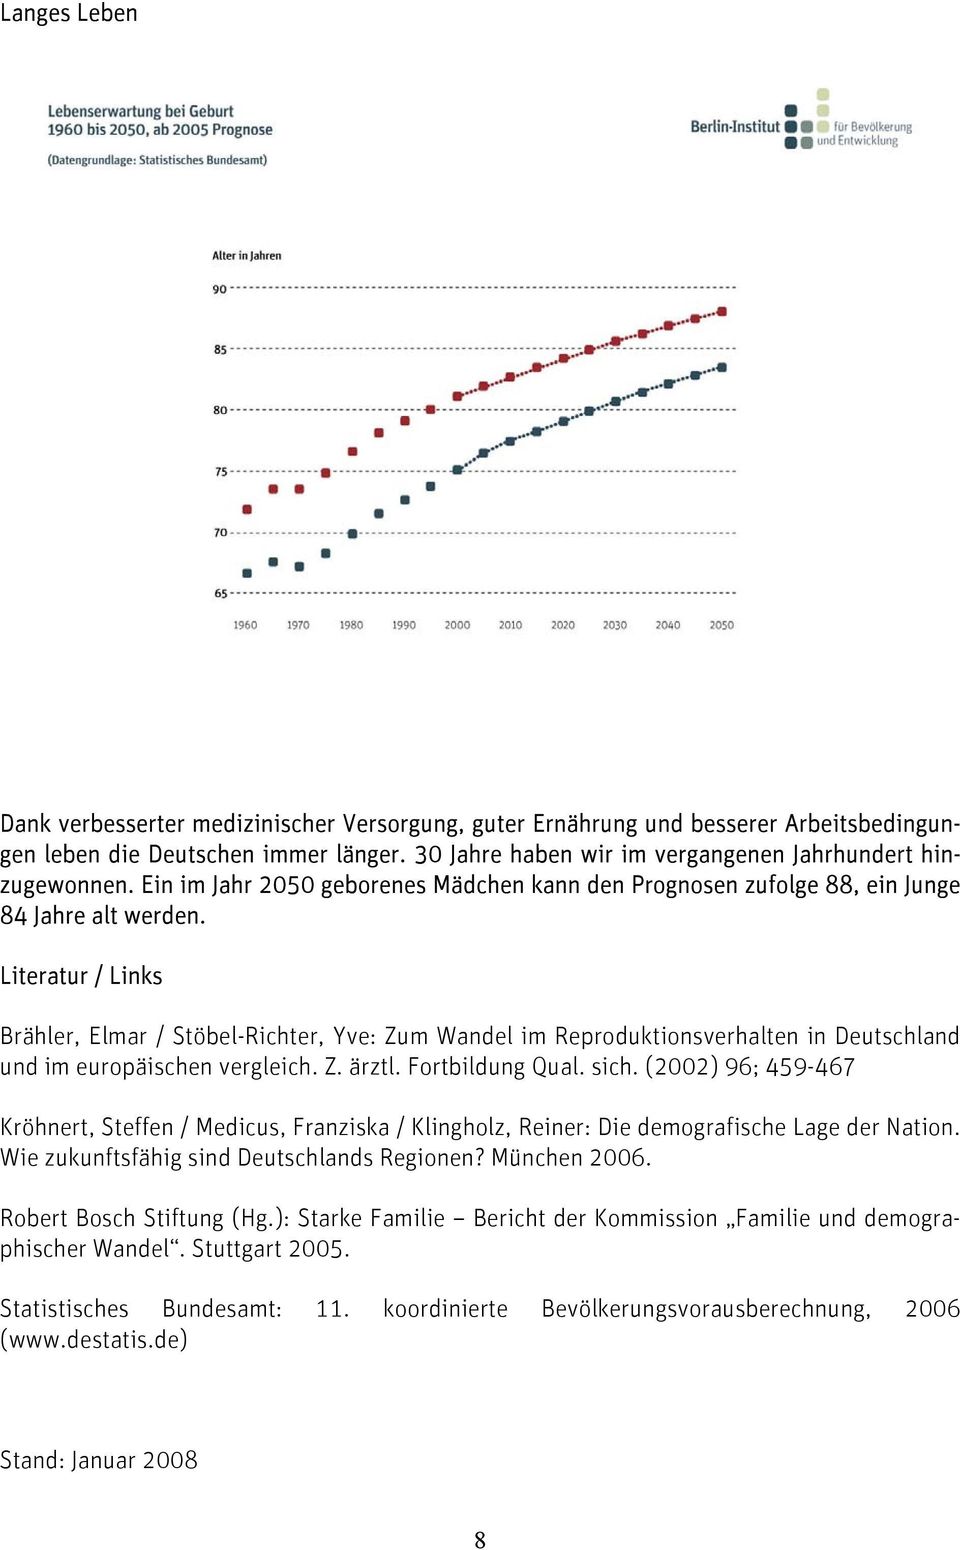 Literatur / Links Brähler, Elmar / Stöbel-Richter, Yve: Zum Wandel im Reproduktionsverhalten in Deutschland und im europäischen vergleich. Z. ärztl. Fortbildung Qual. sich.